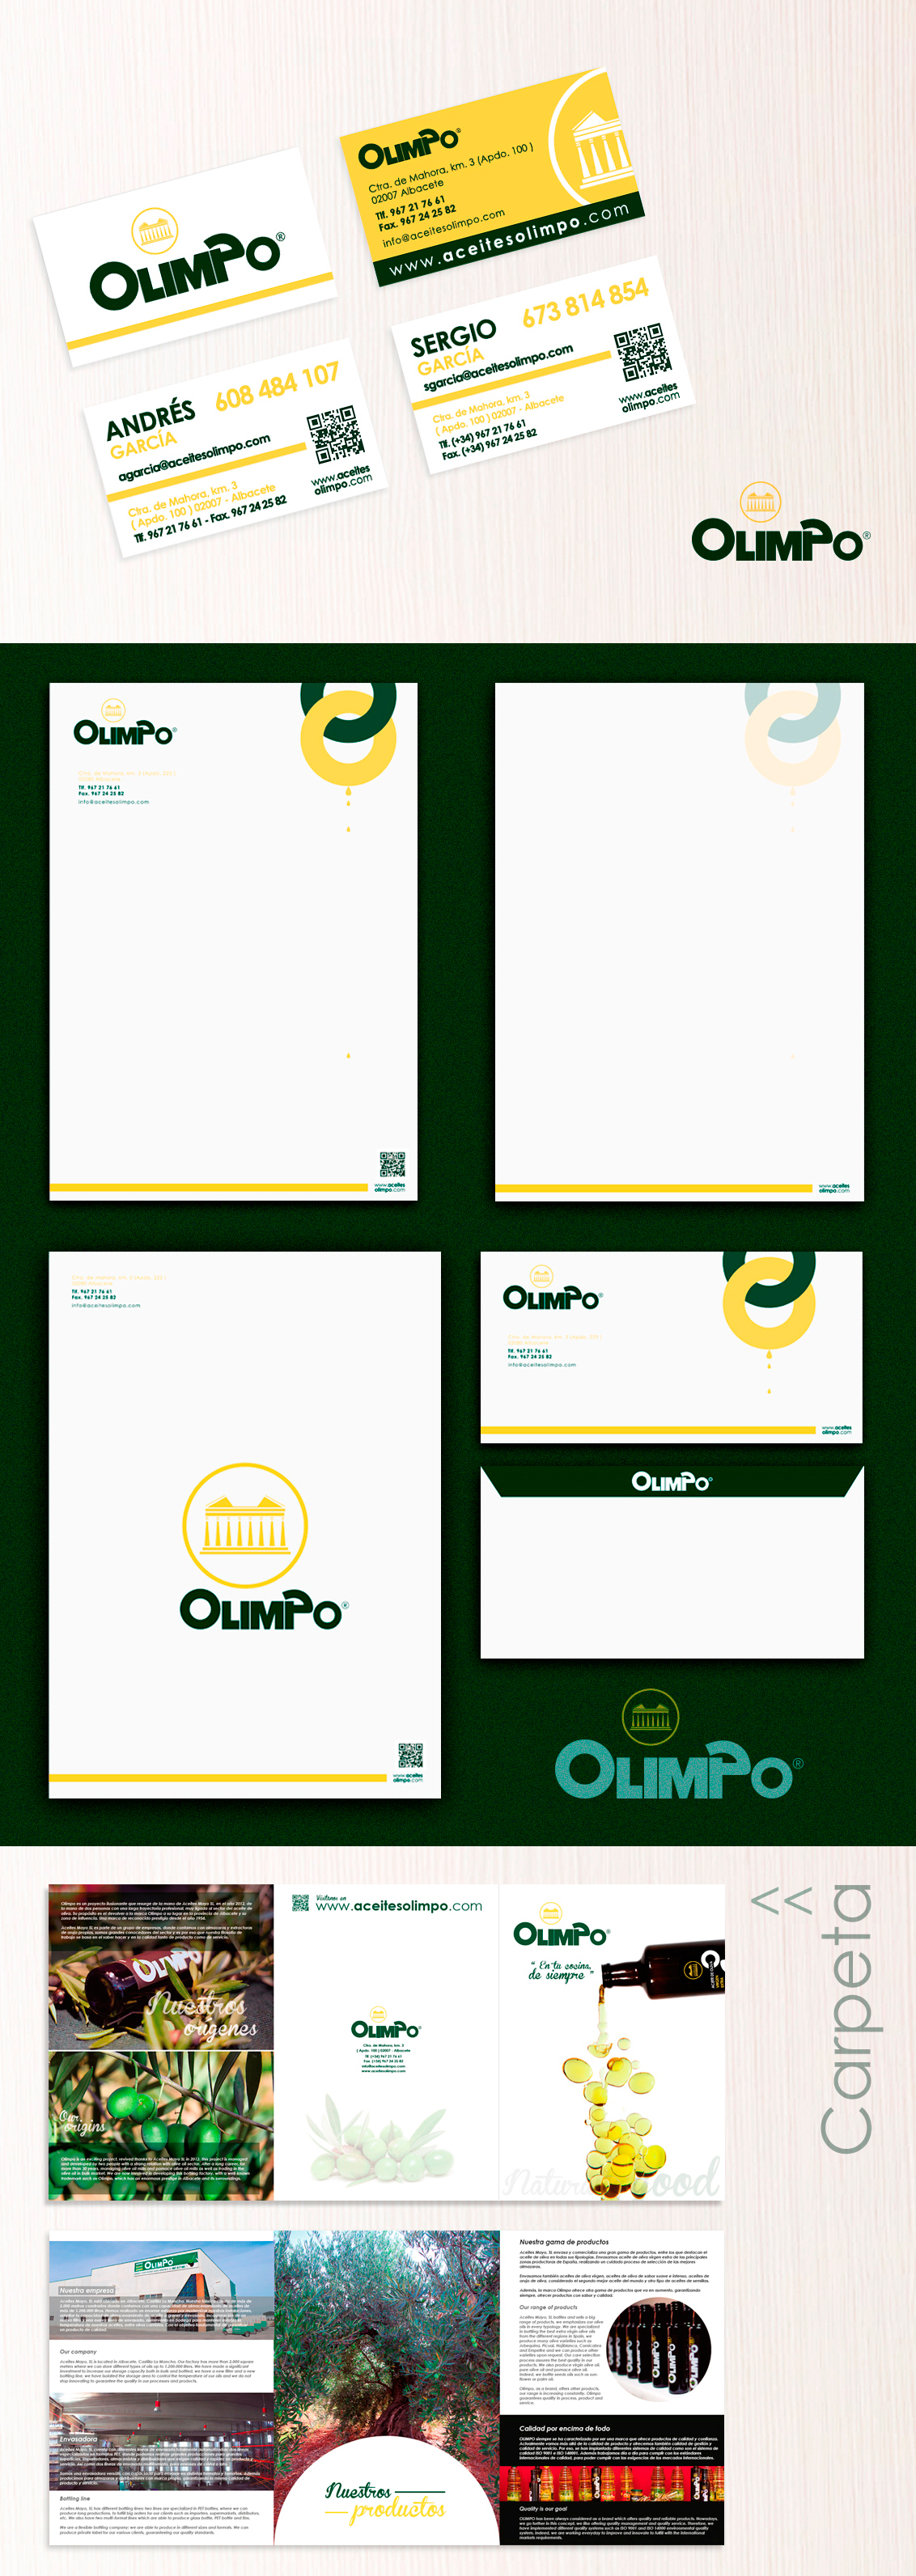 Diseño gráfico Albacete, diseño de imagen corporativa Olimpo, diseño grafico, branding, diseño de fichas, diseño etiquetas aceites Olimpo